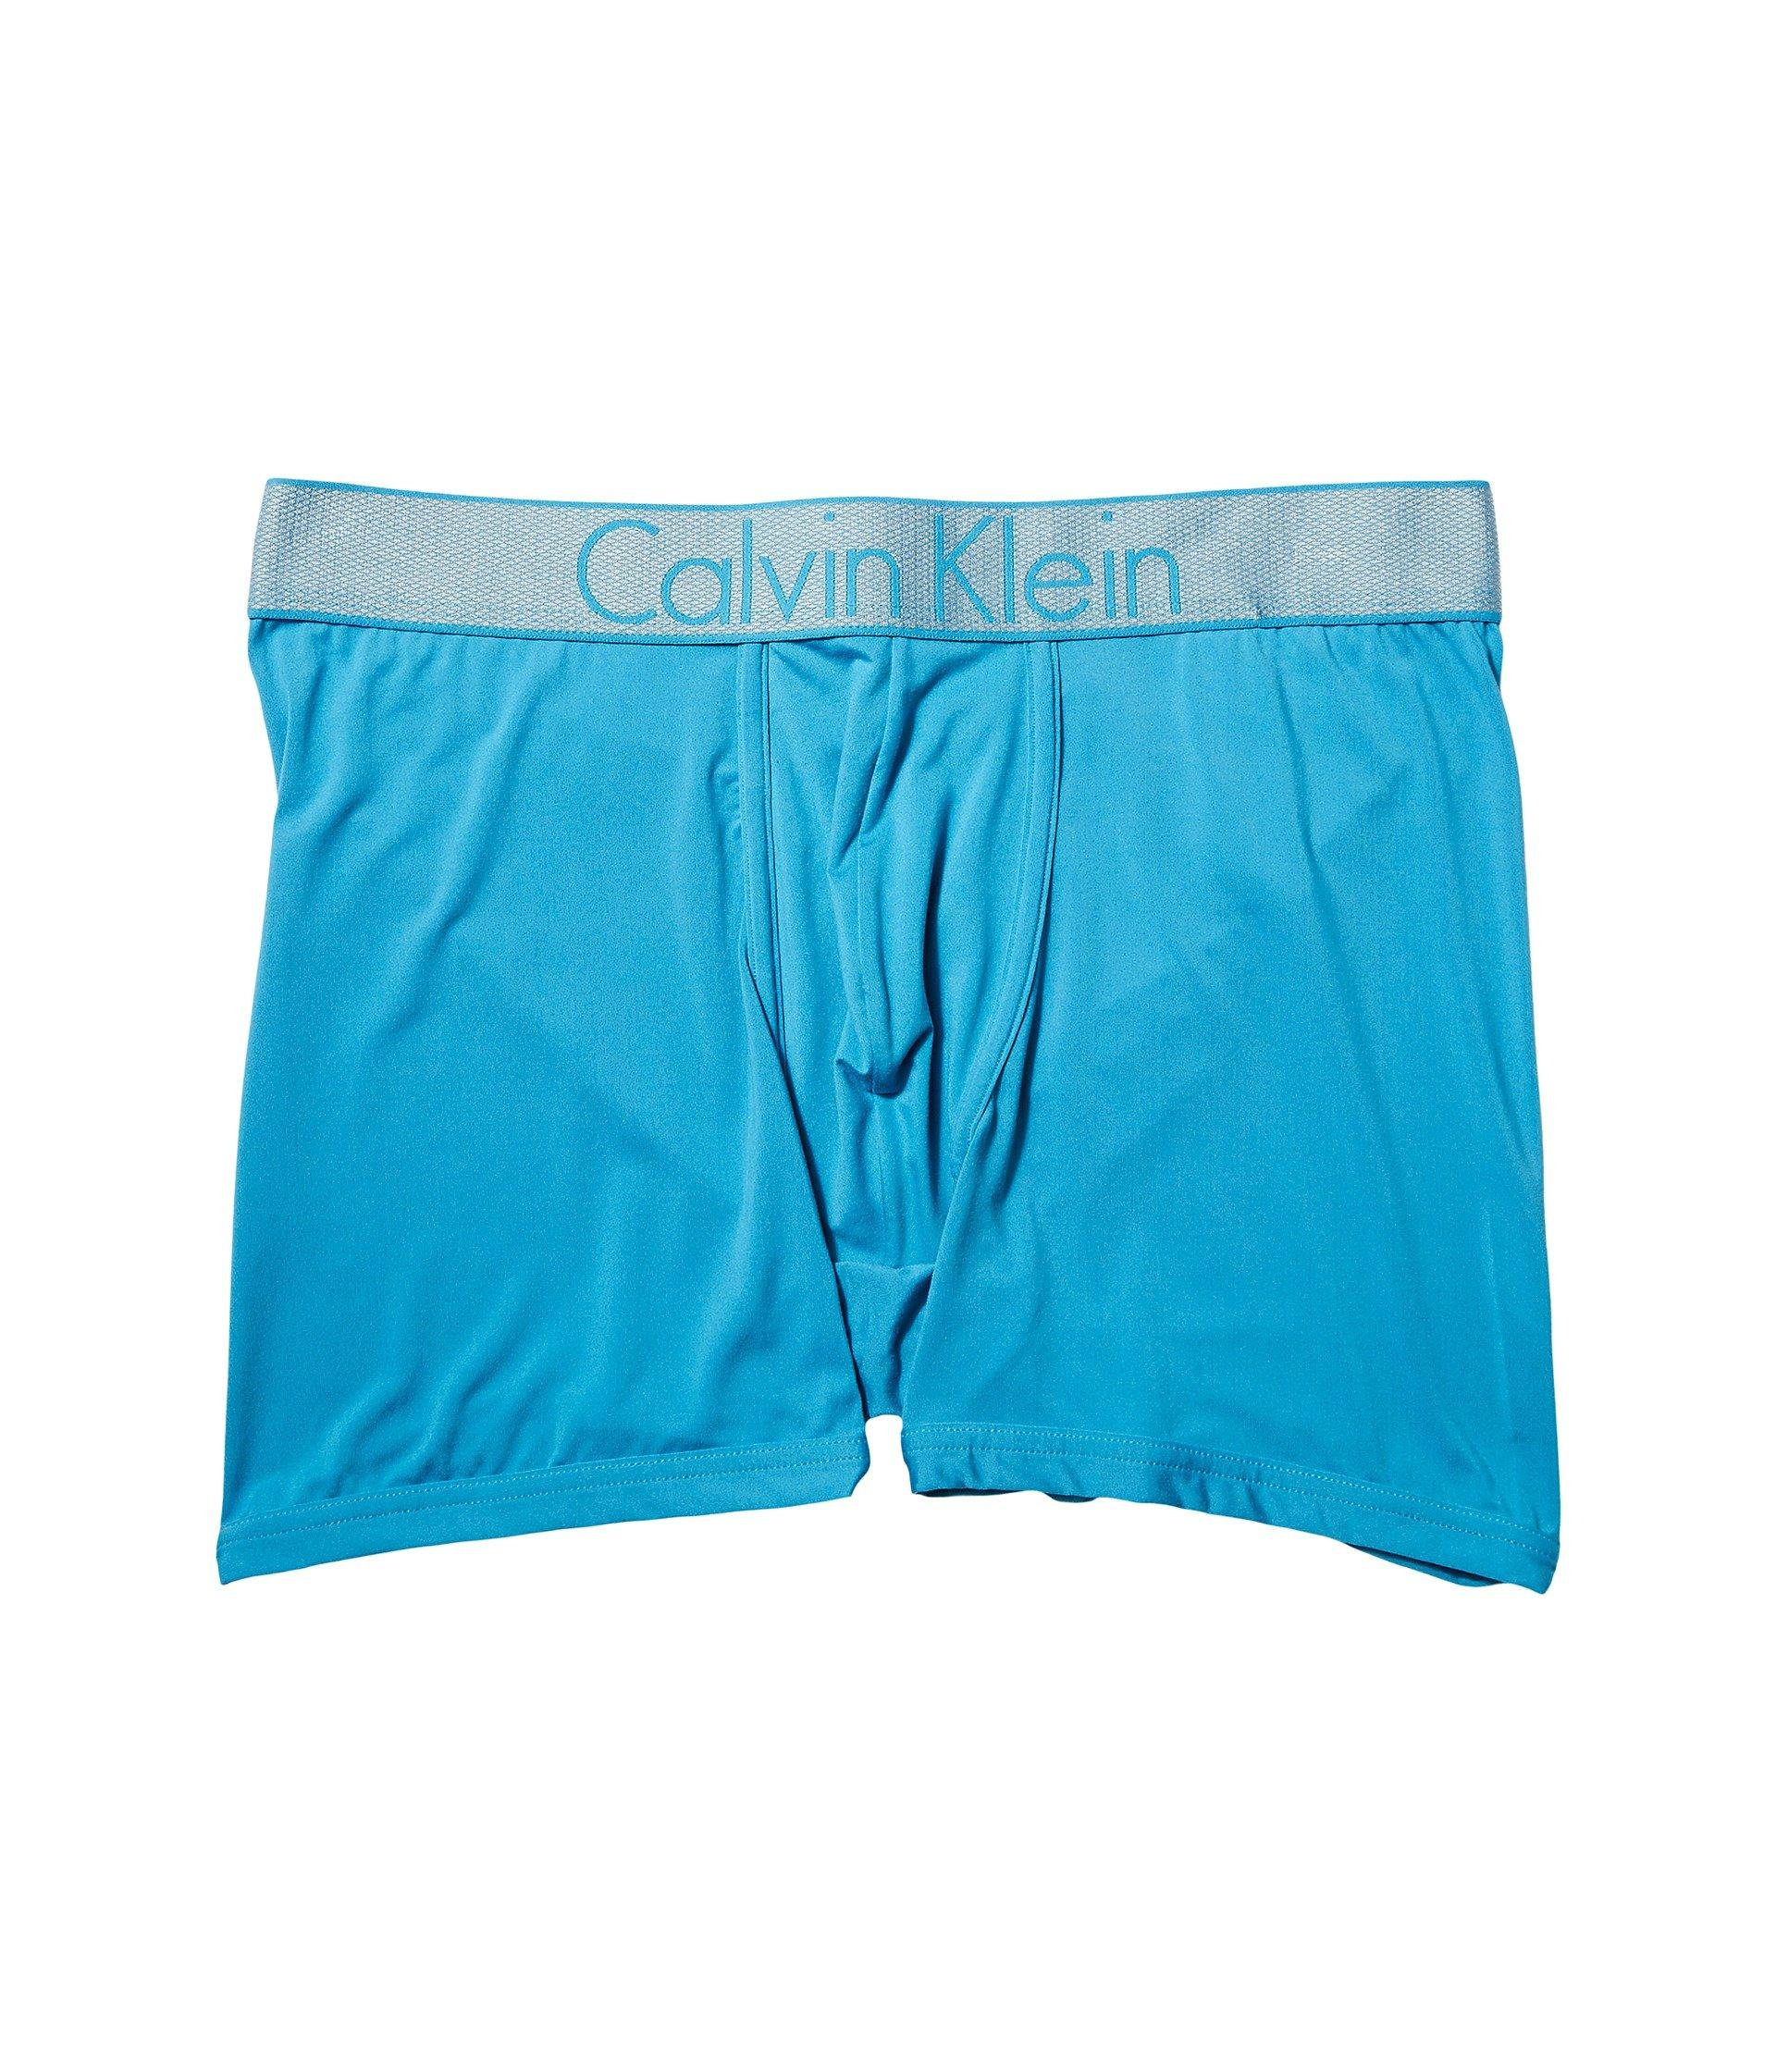 calvin klein customized stretch boxer briefs